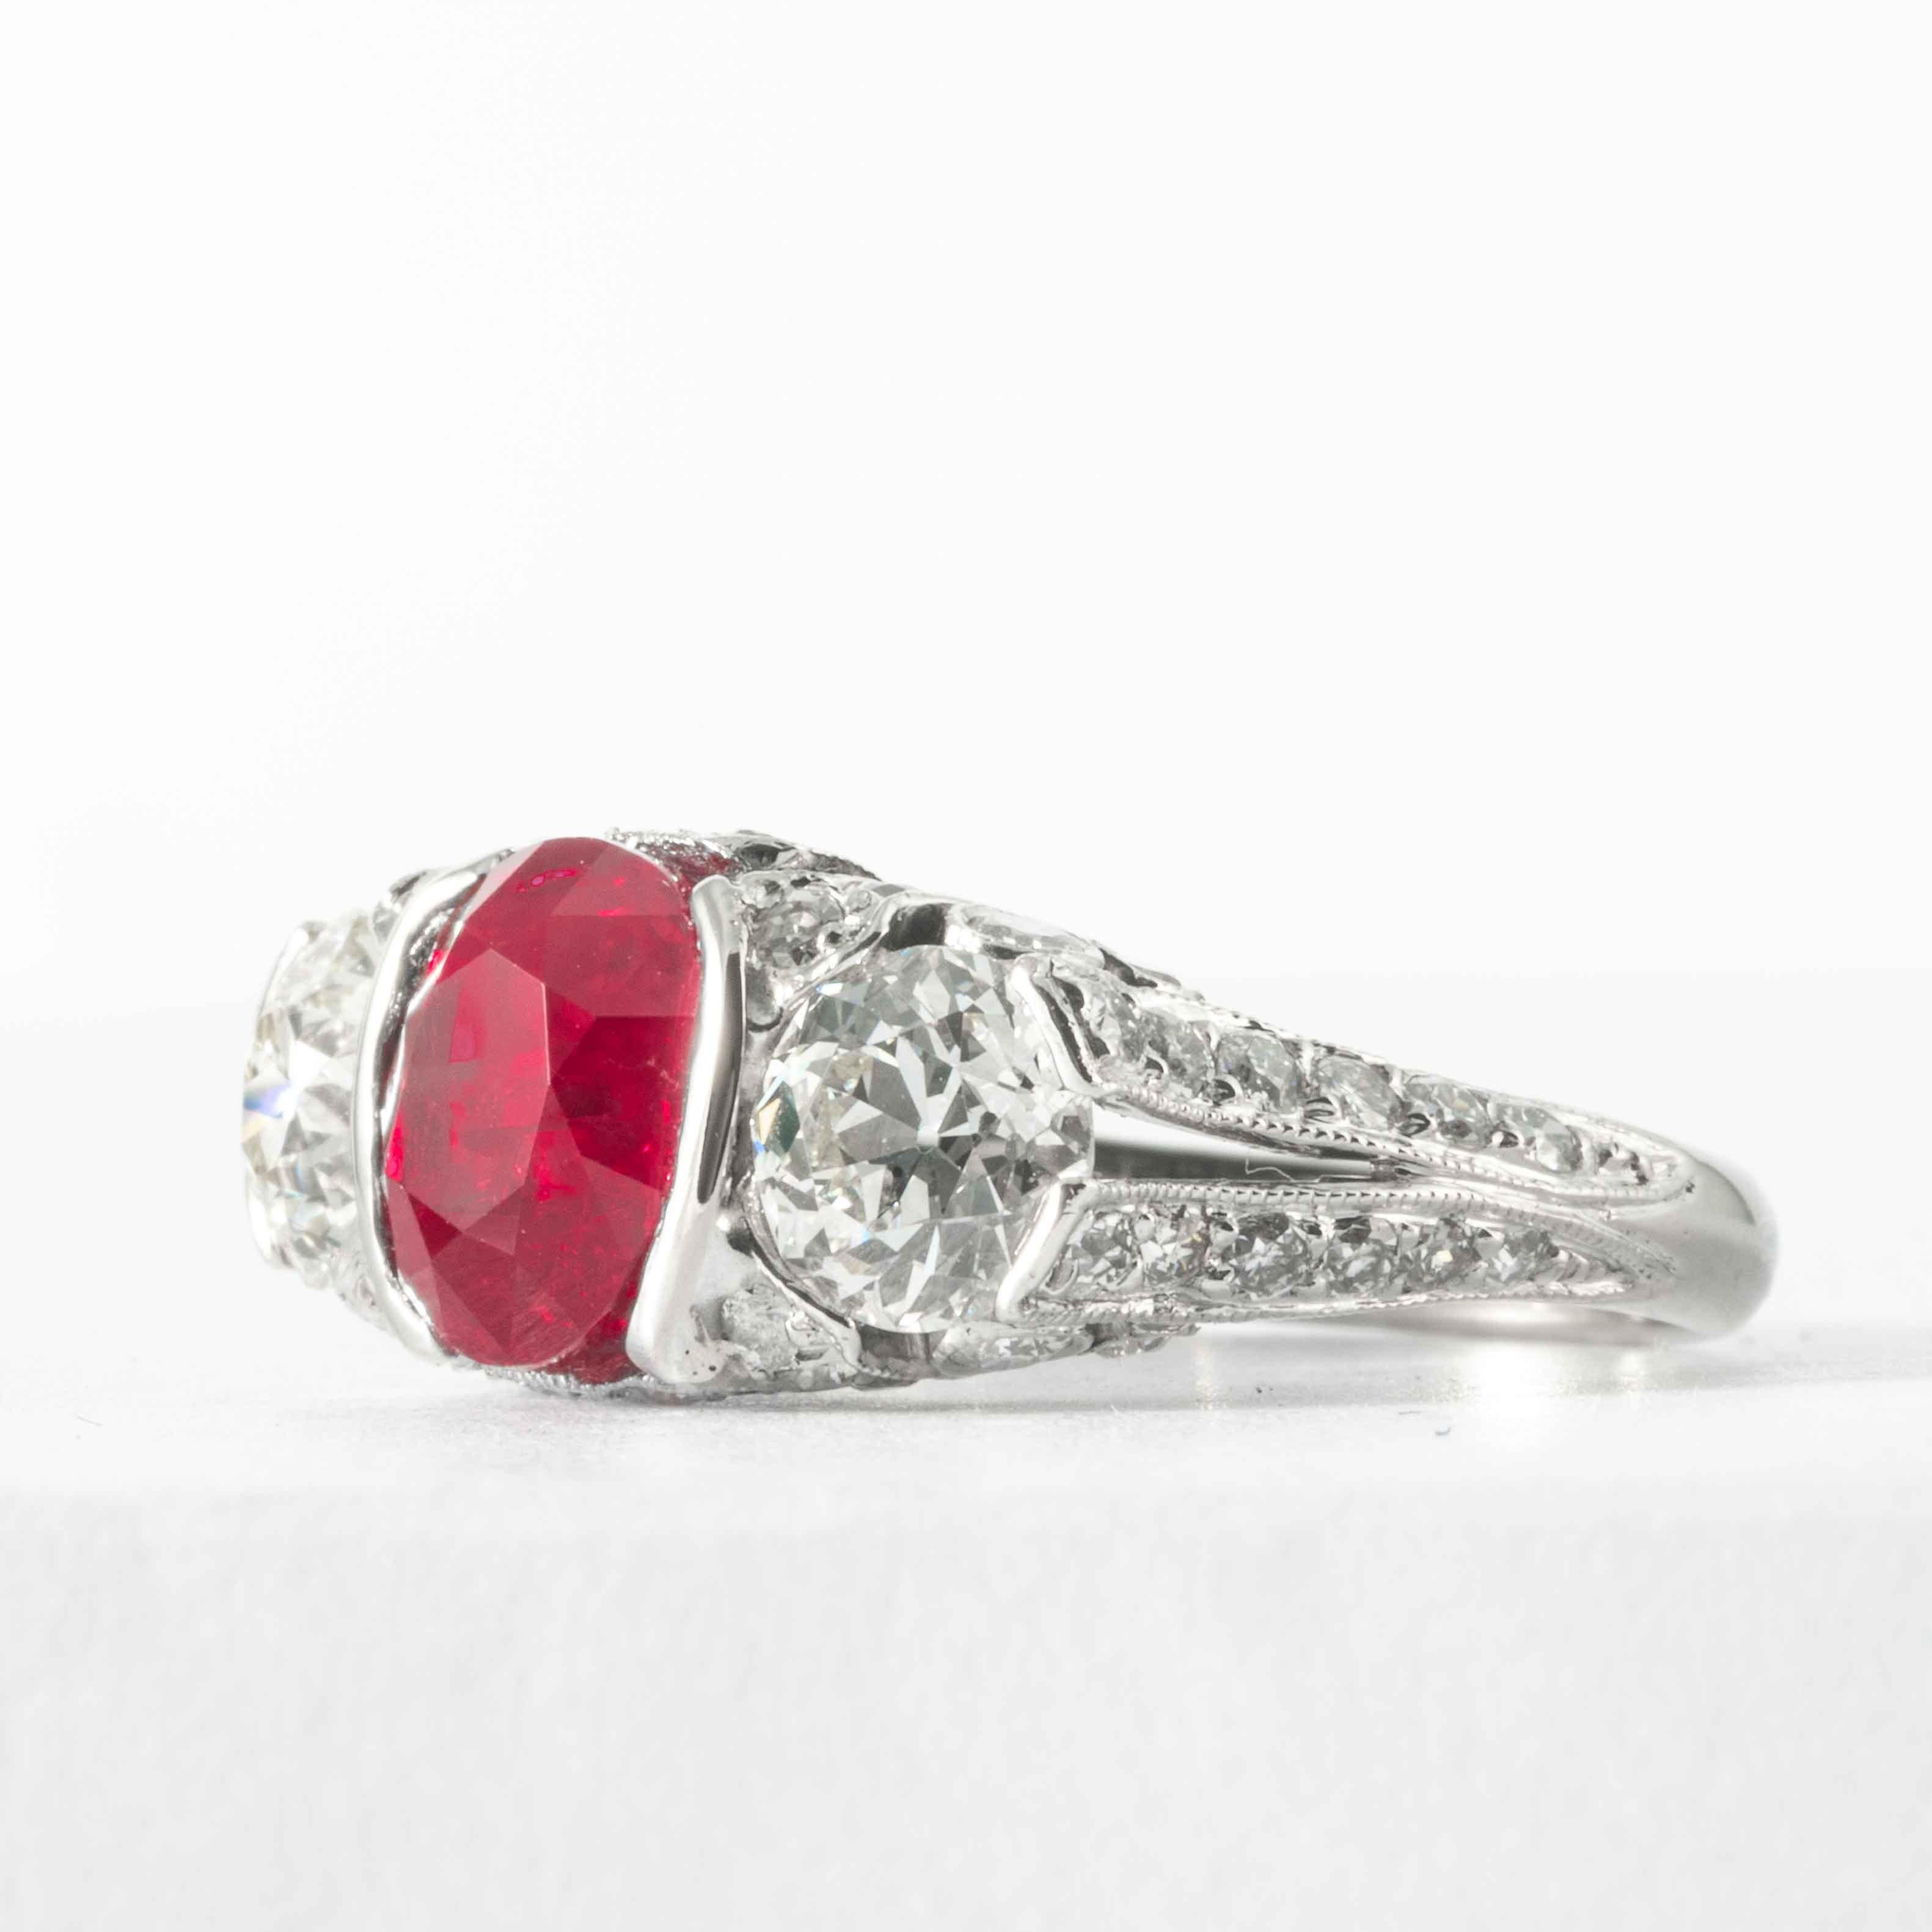 Dieser rote, kissenförmig geschliffene Rubin ist in einem antiken, einzigartigen Diamant- und Platinring gefasst. Er besteht aus einem 